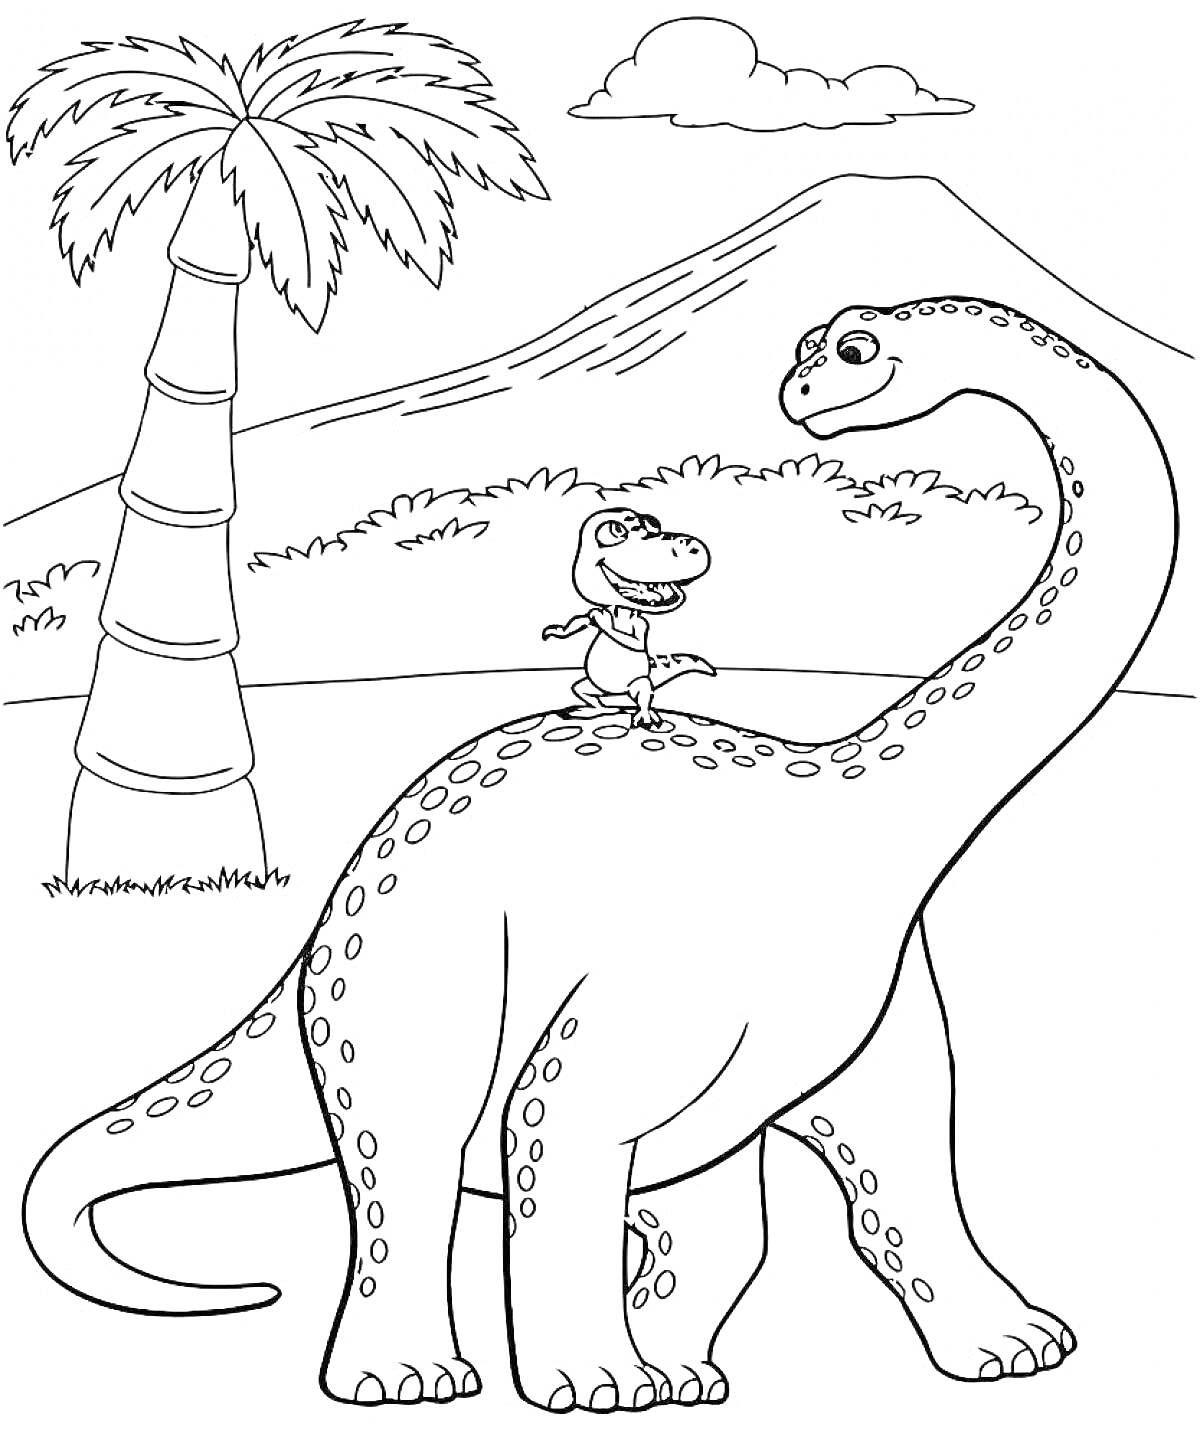 Раскраска Большой динозавр с малышом на спине, пальма и гора на заднем плане